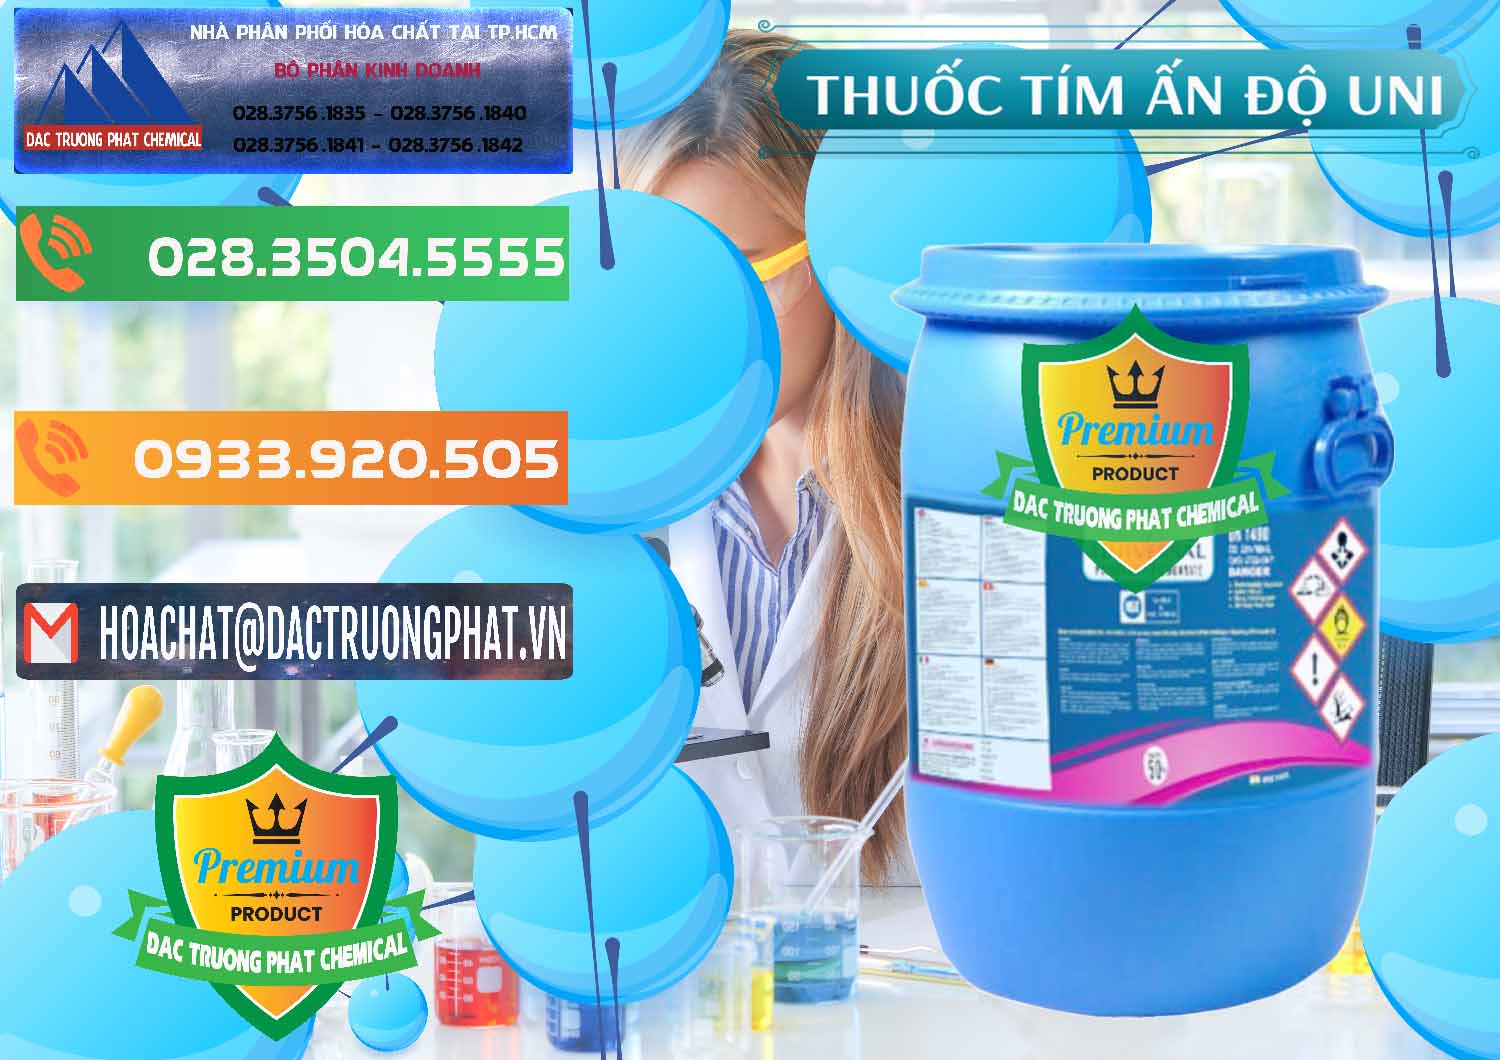 Cty bán _ cung cấp Thuốc Tím - KMNO4 Universal Ấn Độ India - 0419 - Nhà cung cấp & phân phối hóa chất tại TP.HCM - hoachatxulynuoc.com.vn